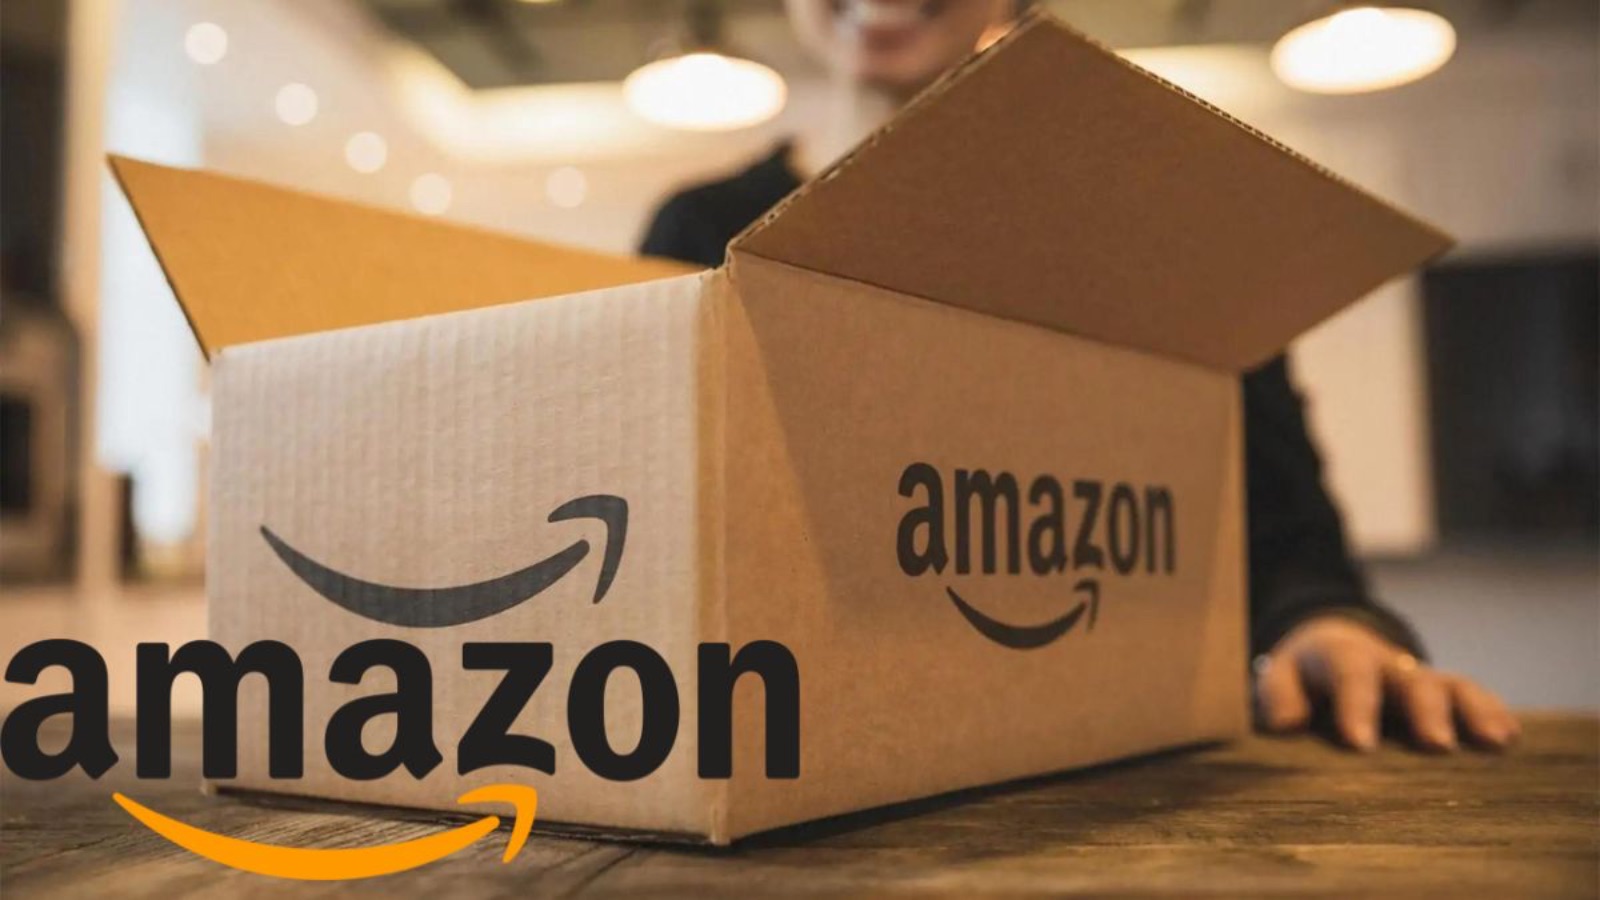 Amazon, assurde le offerte al 50% di sconto su telefoni e tecnologia 